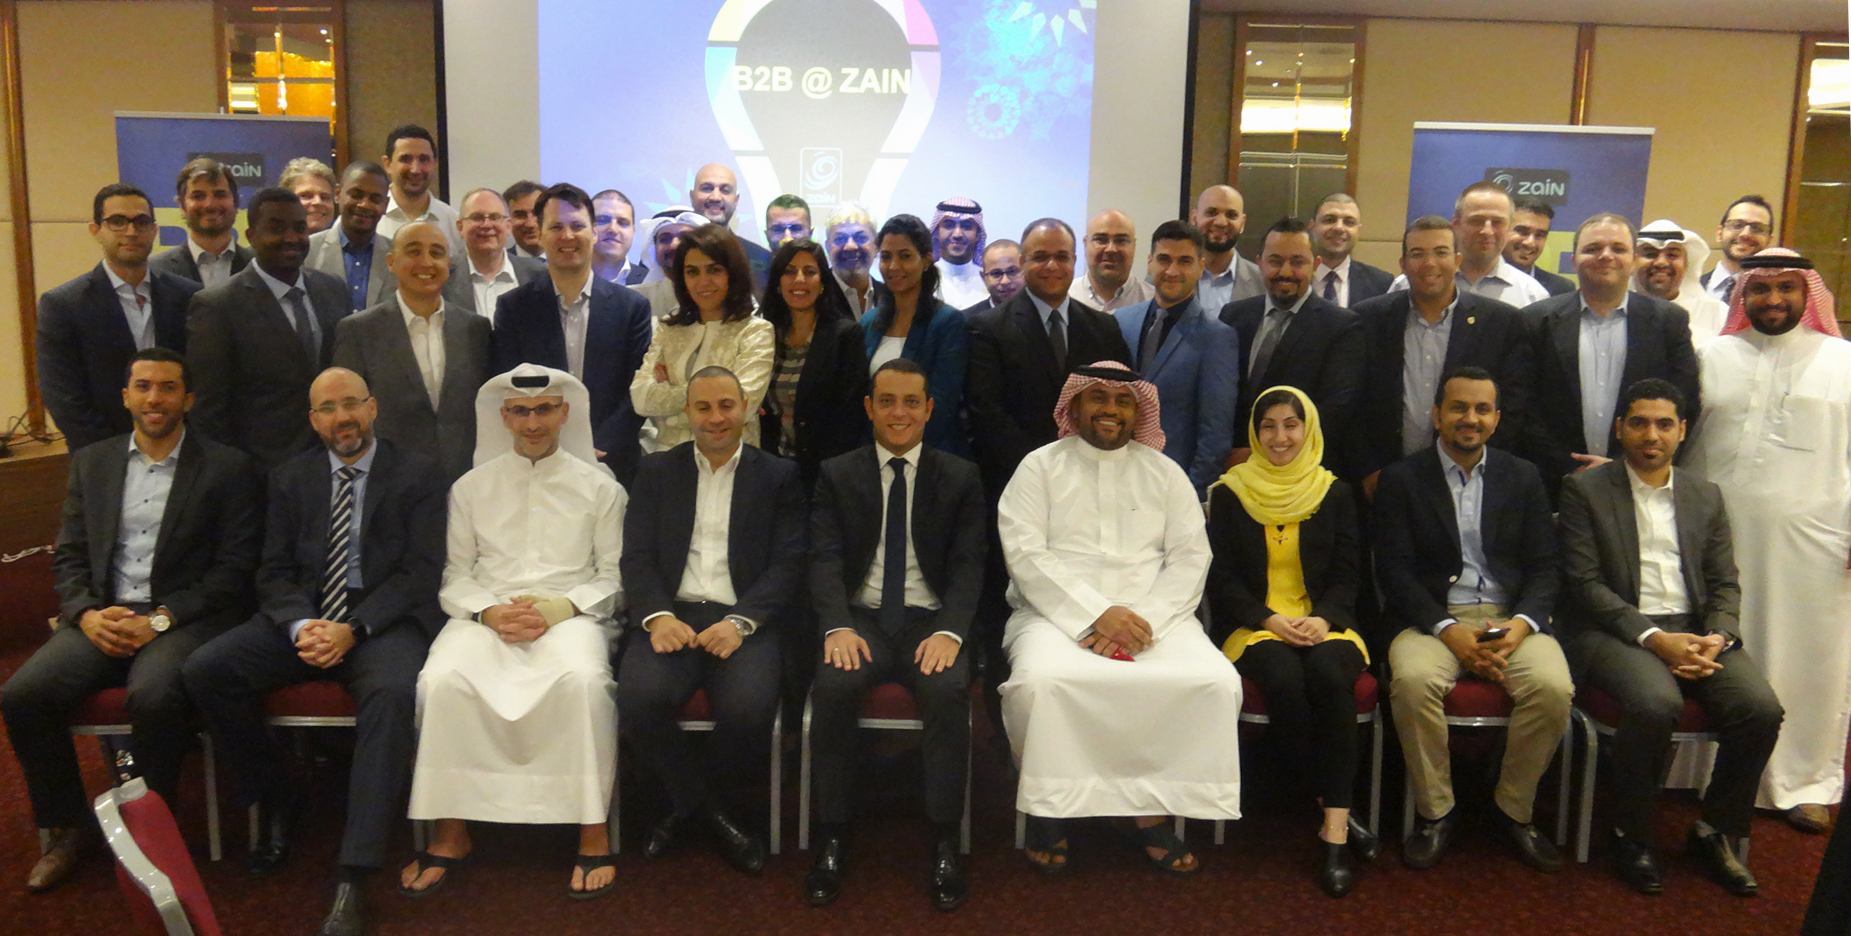 Zain B2B Forum group pic in Bahrain.JPG